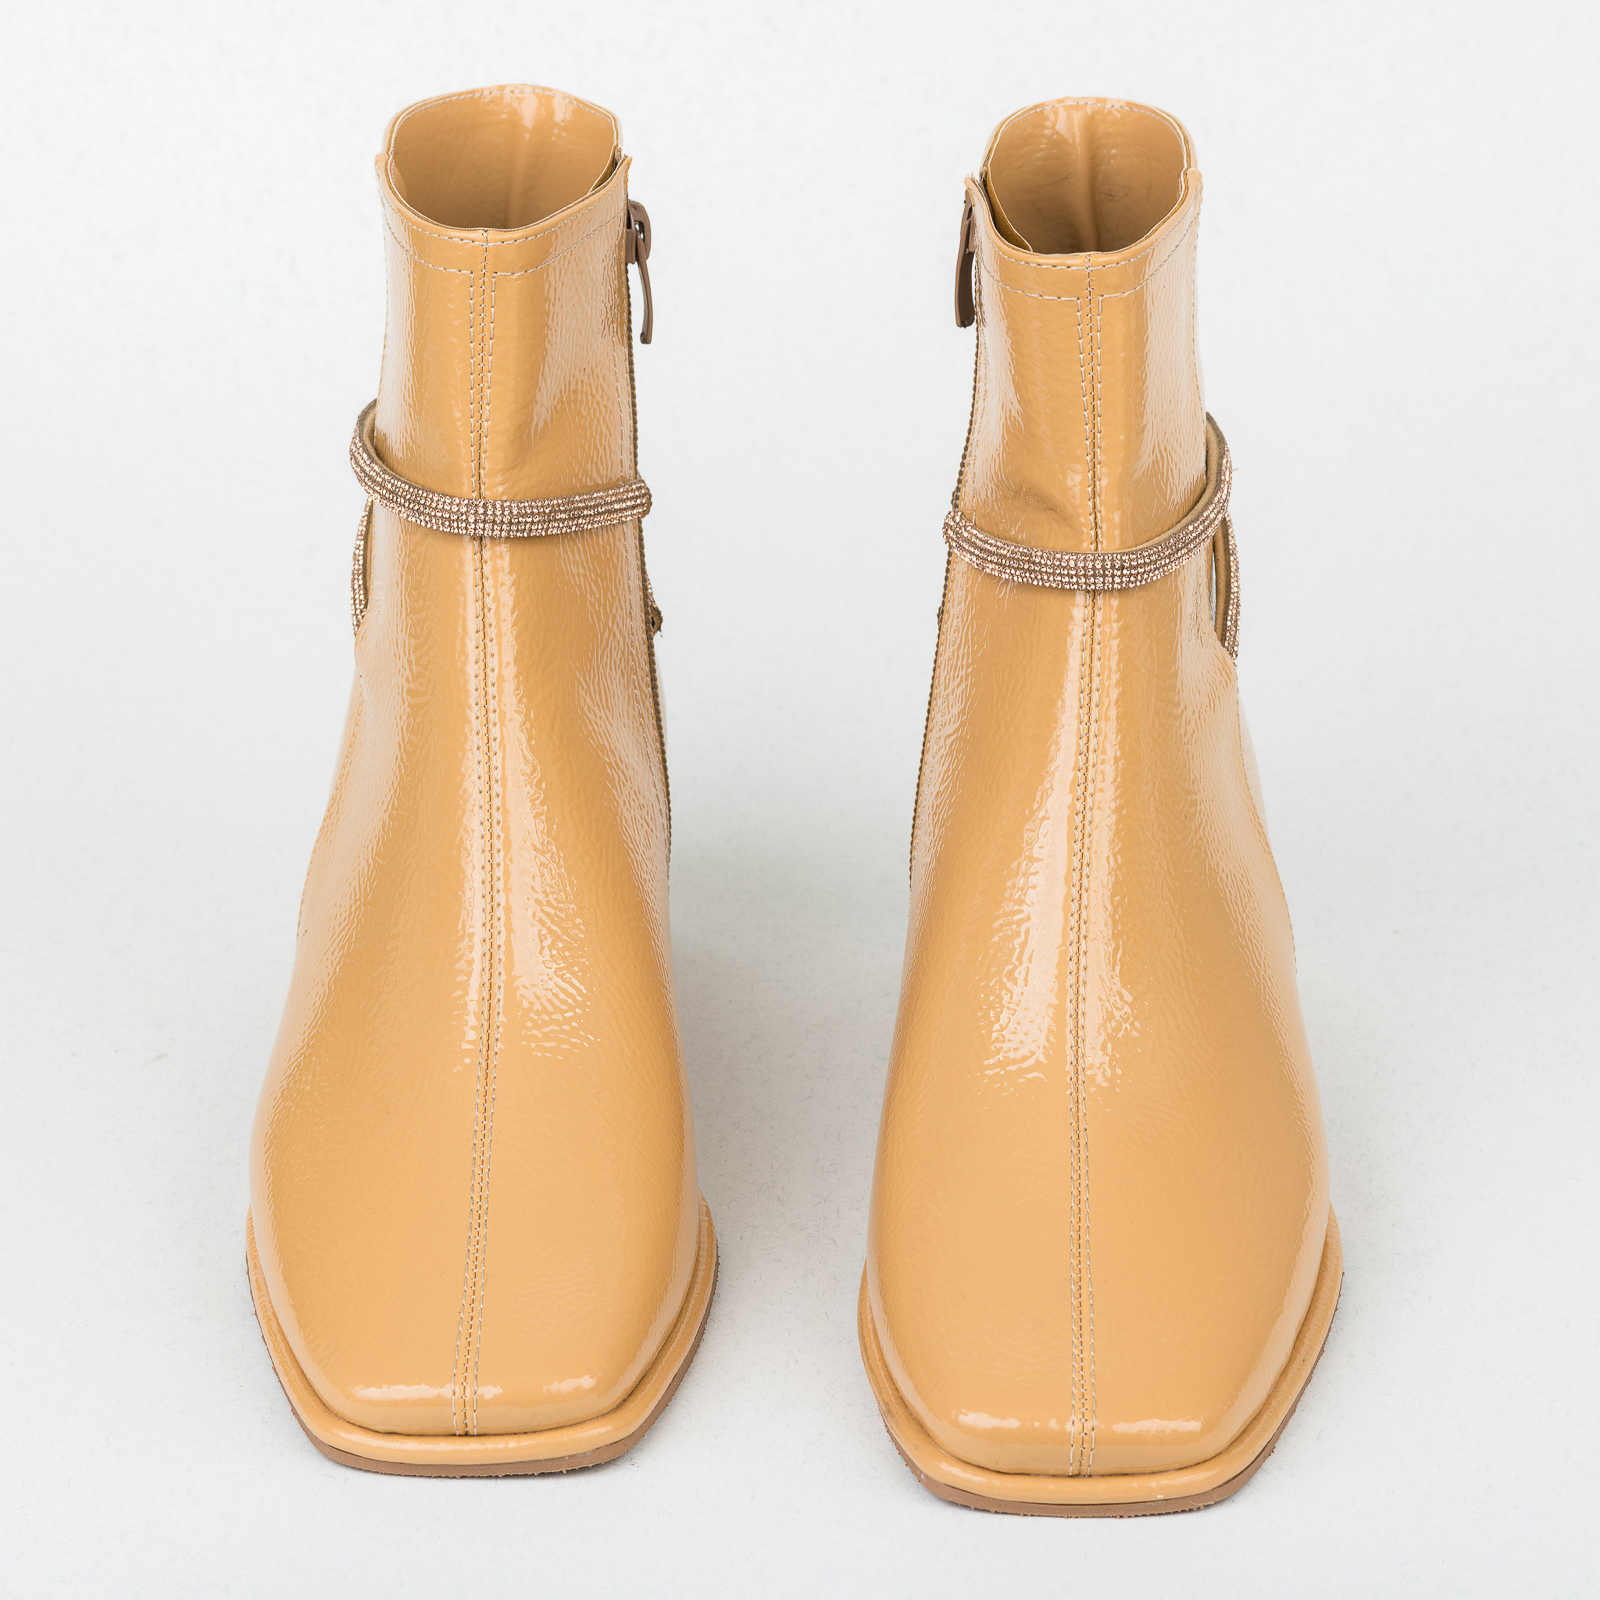 Women ankle boots B406 - BEIGE